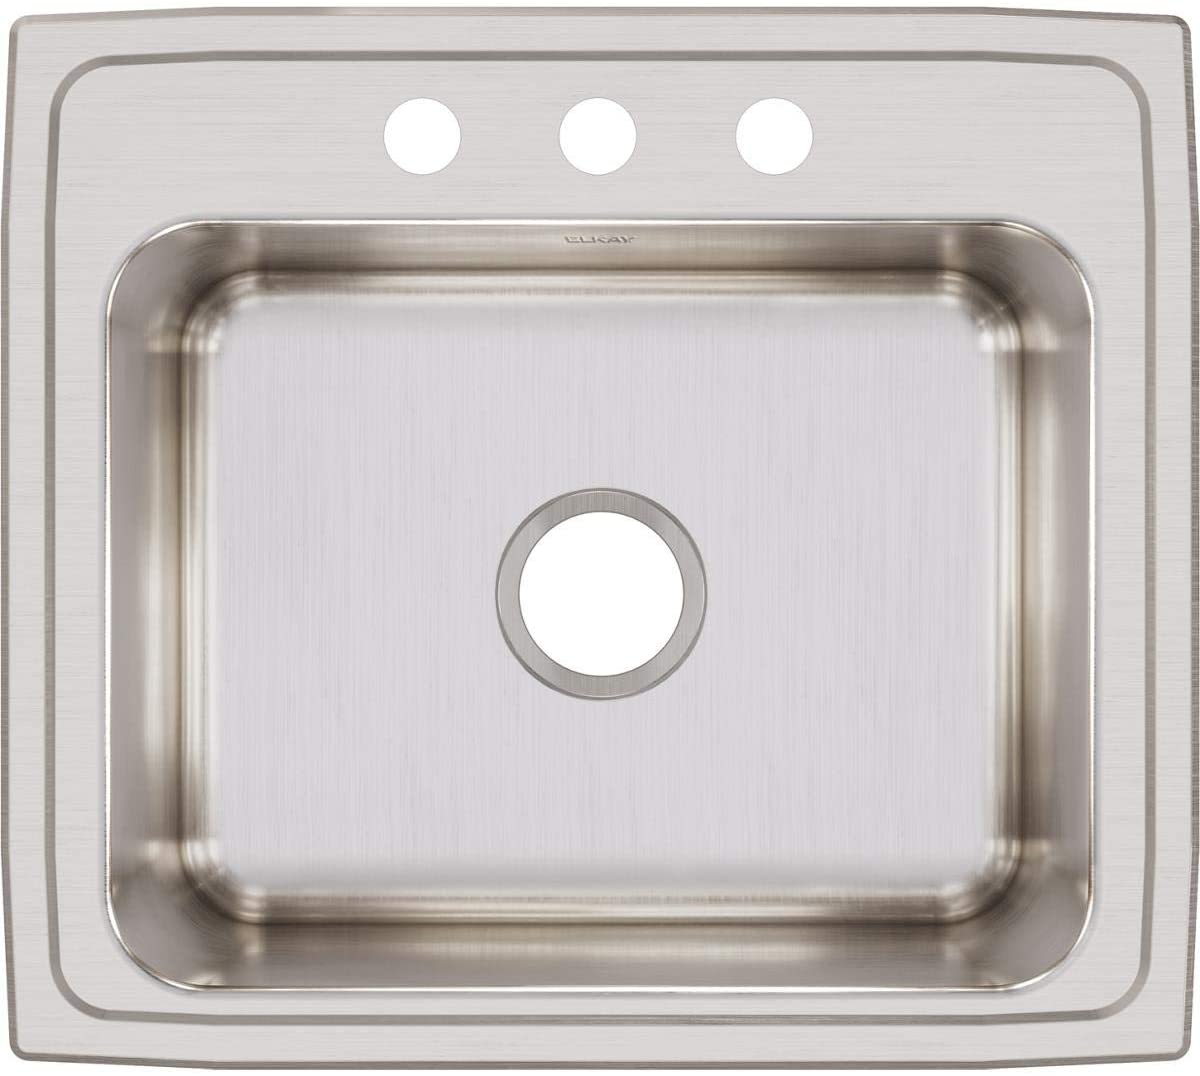 Elkay DLR2219103 - 18 Gauge Stainless Steel 22" x 19.5" x 10.125" Single Bowl Drop-in Kitchen Sink